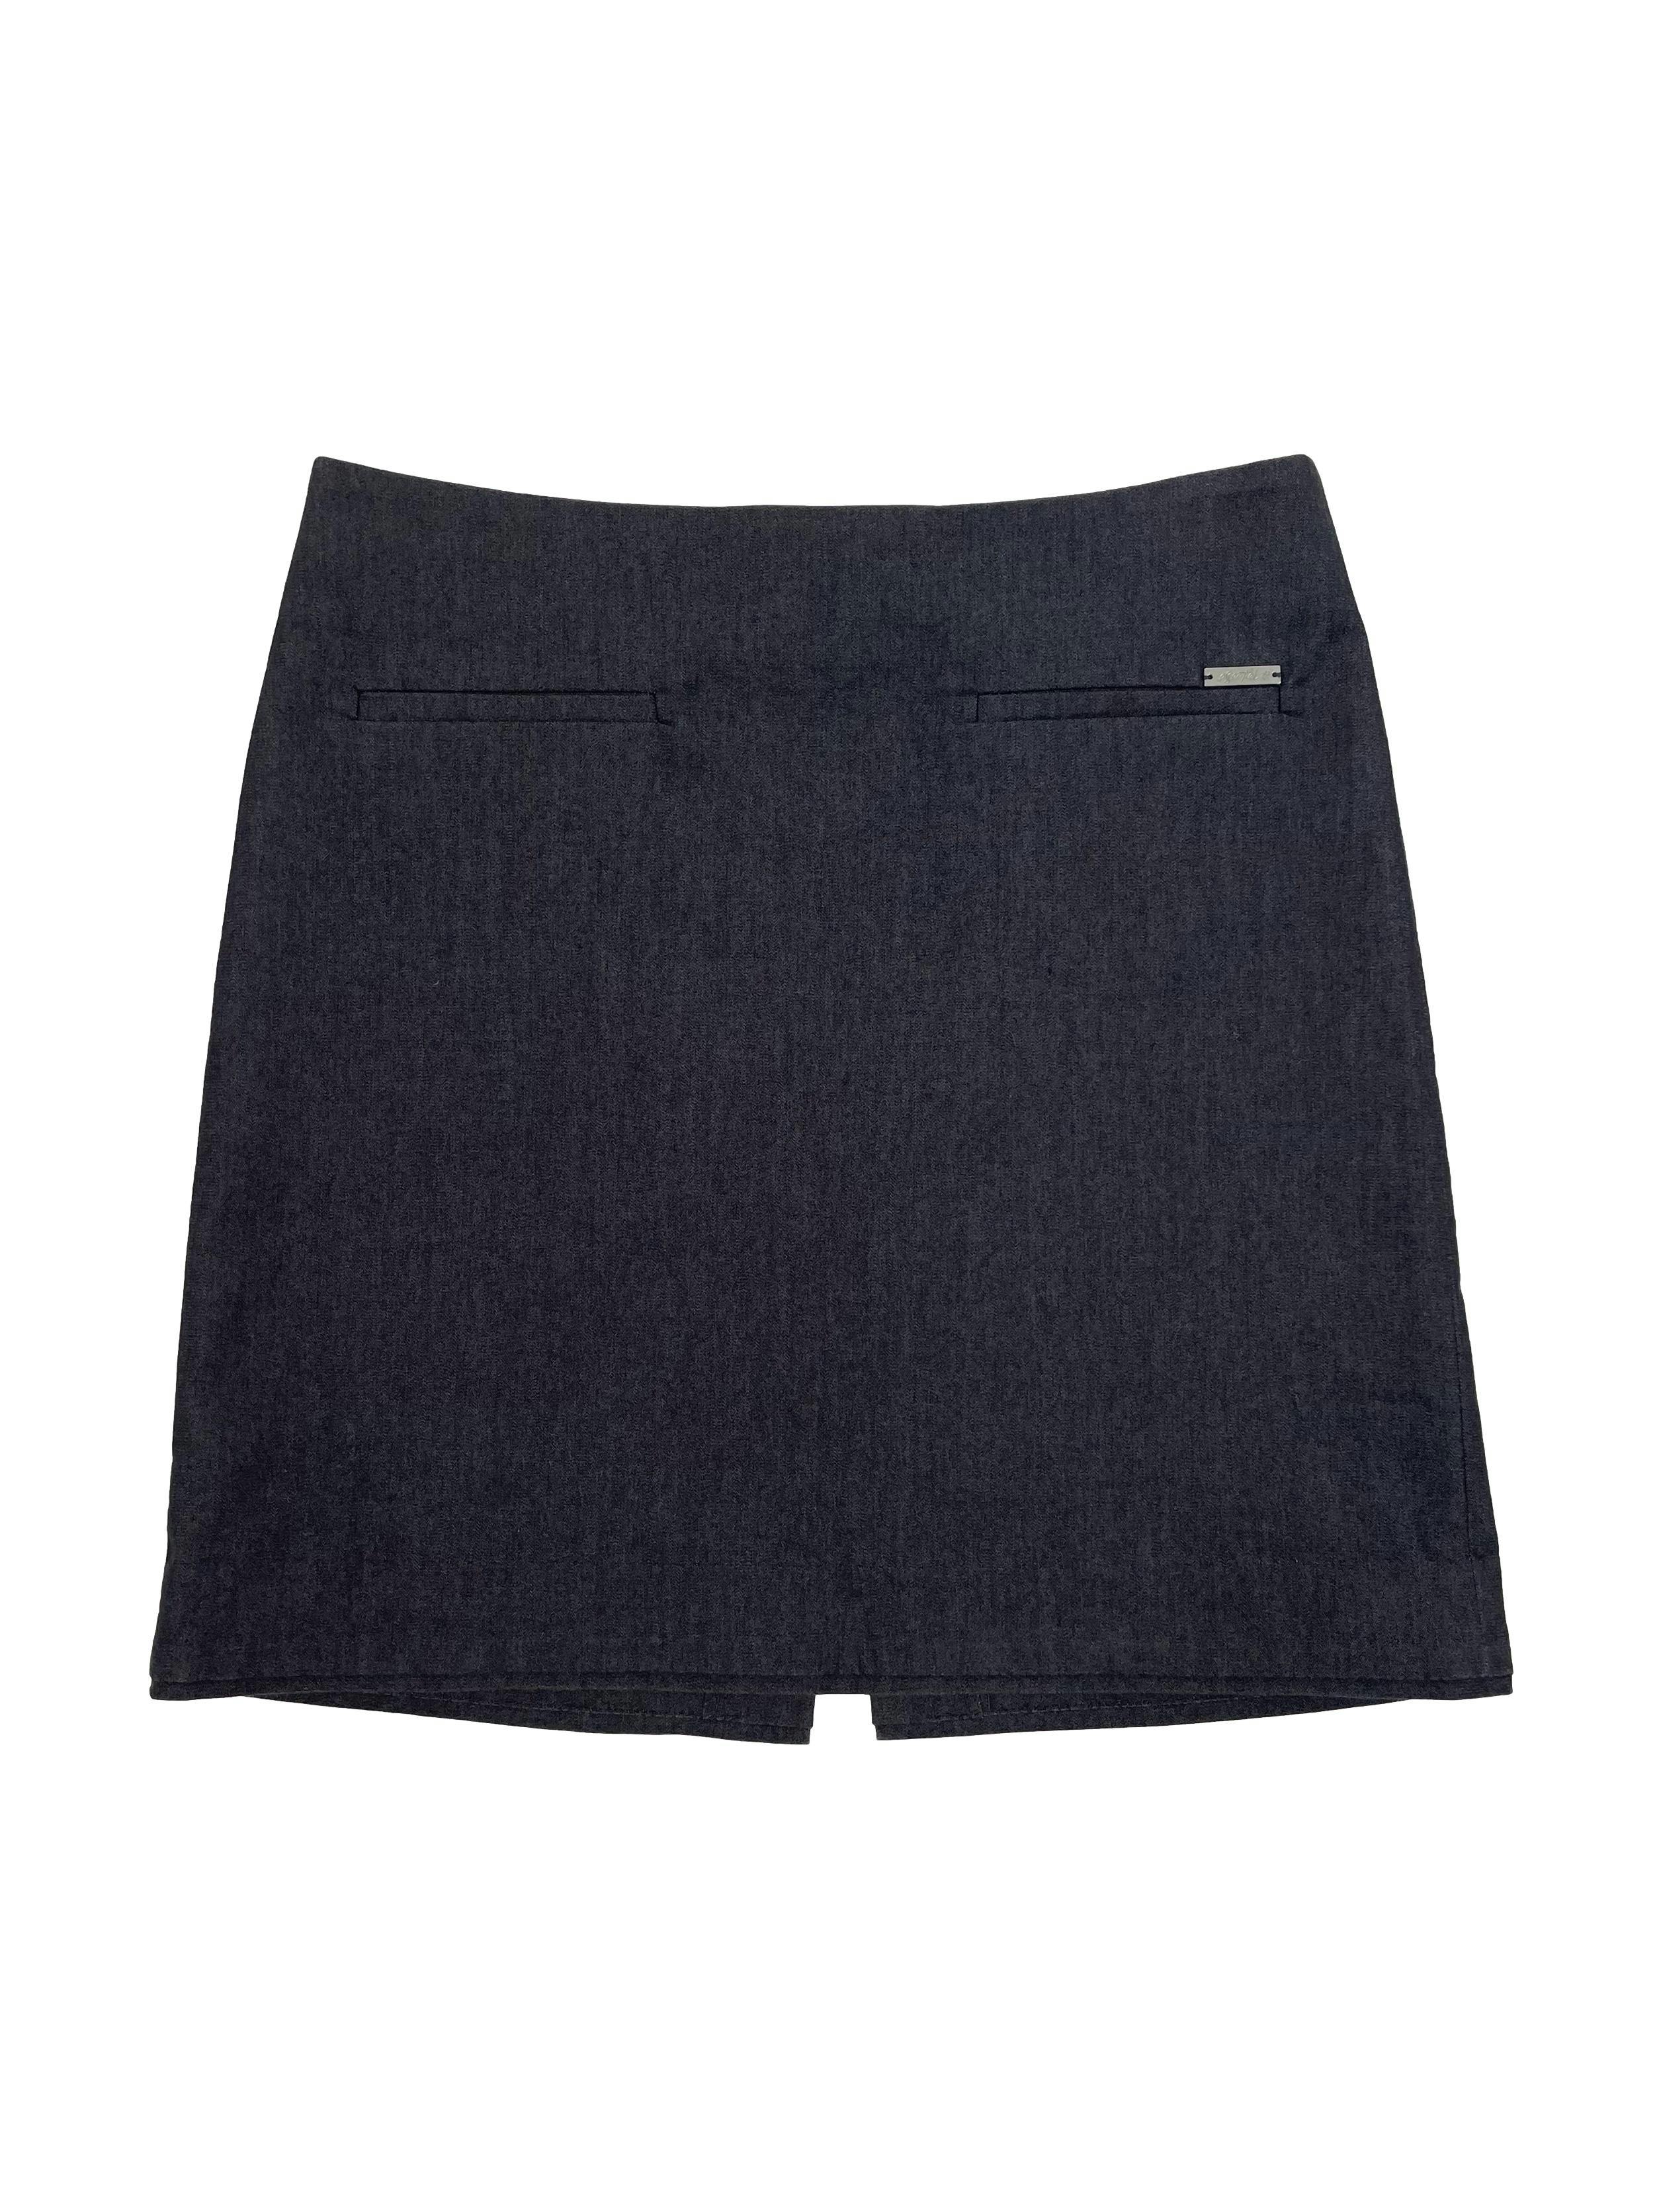 Falda Essentiel formal, color gris con falsos bolsillos, cierre invisible y abertura posterior. Cintura 76cm,Largo 44cm.